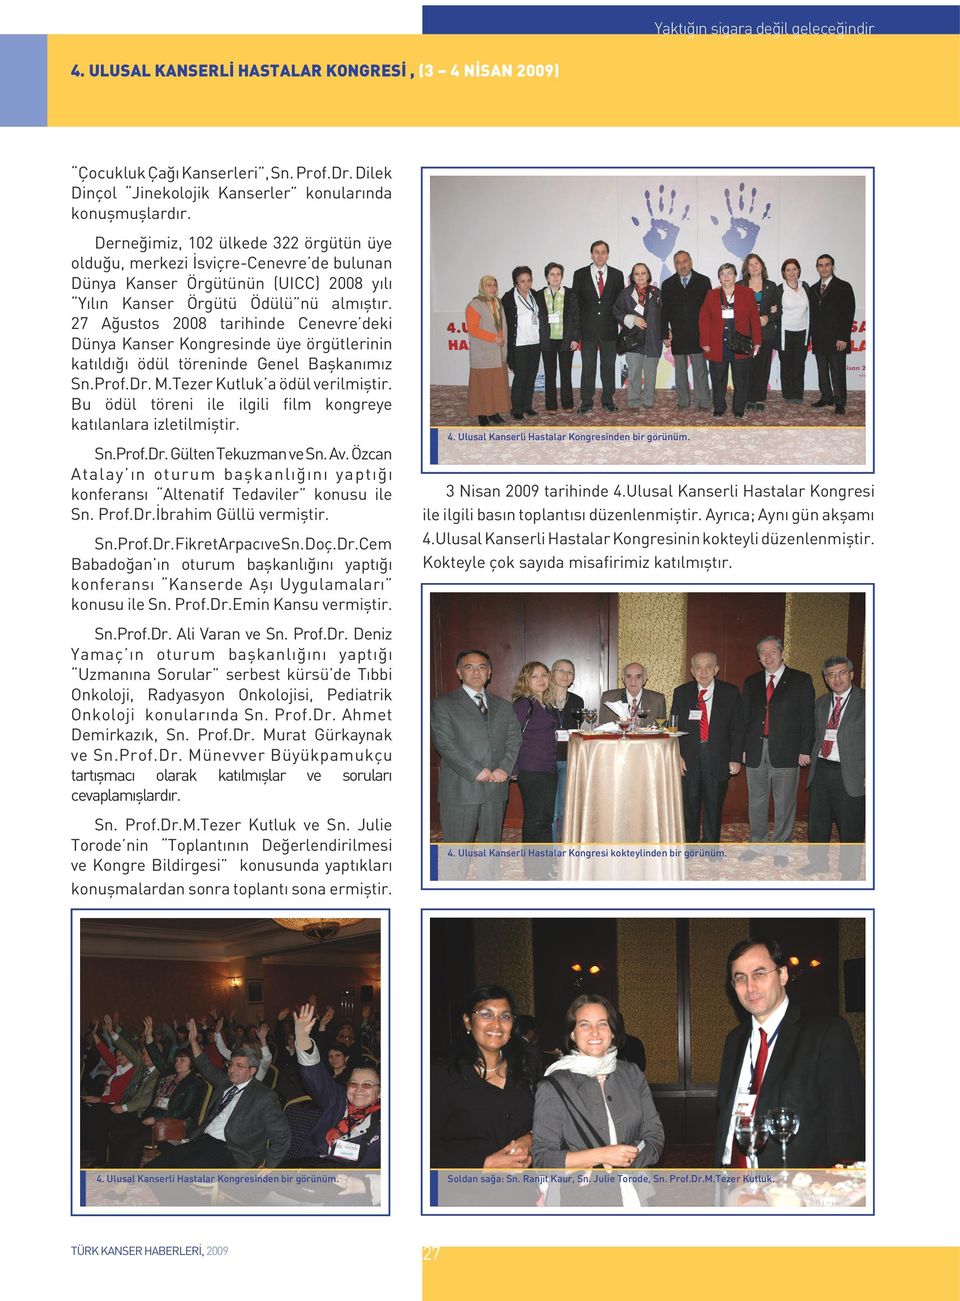 27 Ağustos 2008 tarihinde Cenevre deki Dünya Kanser Kongresinde üye örgütlerinin katıldığı ödül töreninde Genel Başkanımız Sn.Prof.Dr. M.Tezer Kutluk a ödül verilmiştir.